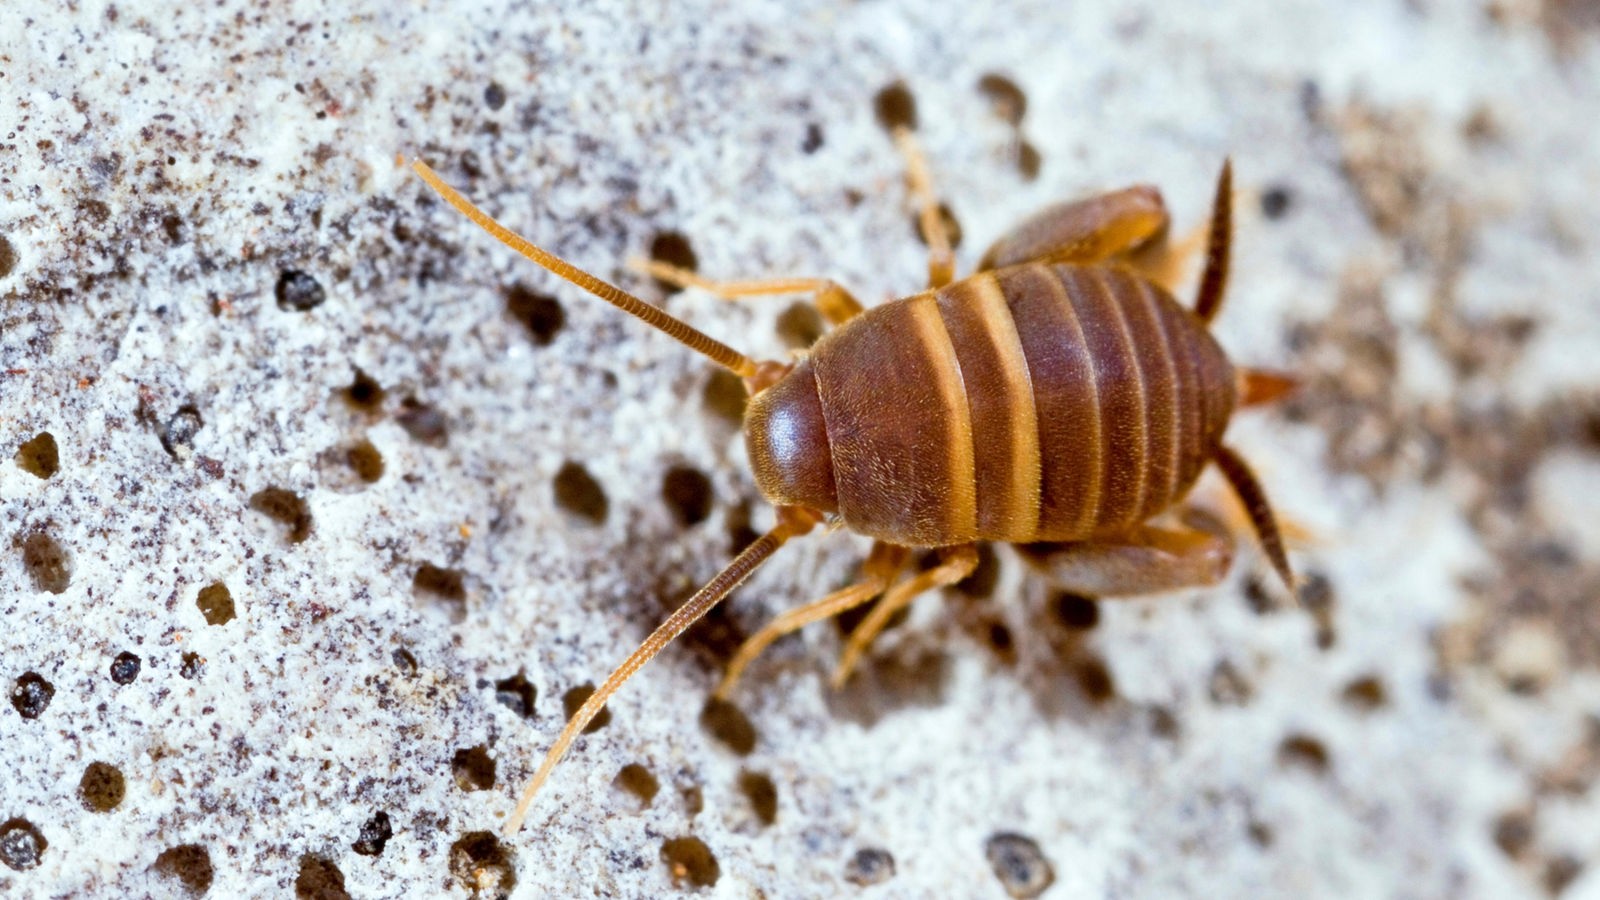 Ein winziges karamellbraunes Insekt mit zwei hellbeigen Streifen auf dem Rücken krabbelt über einen grauen Stein.